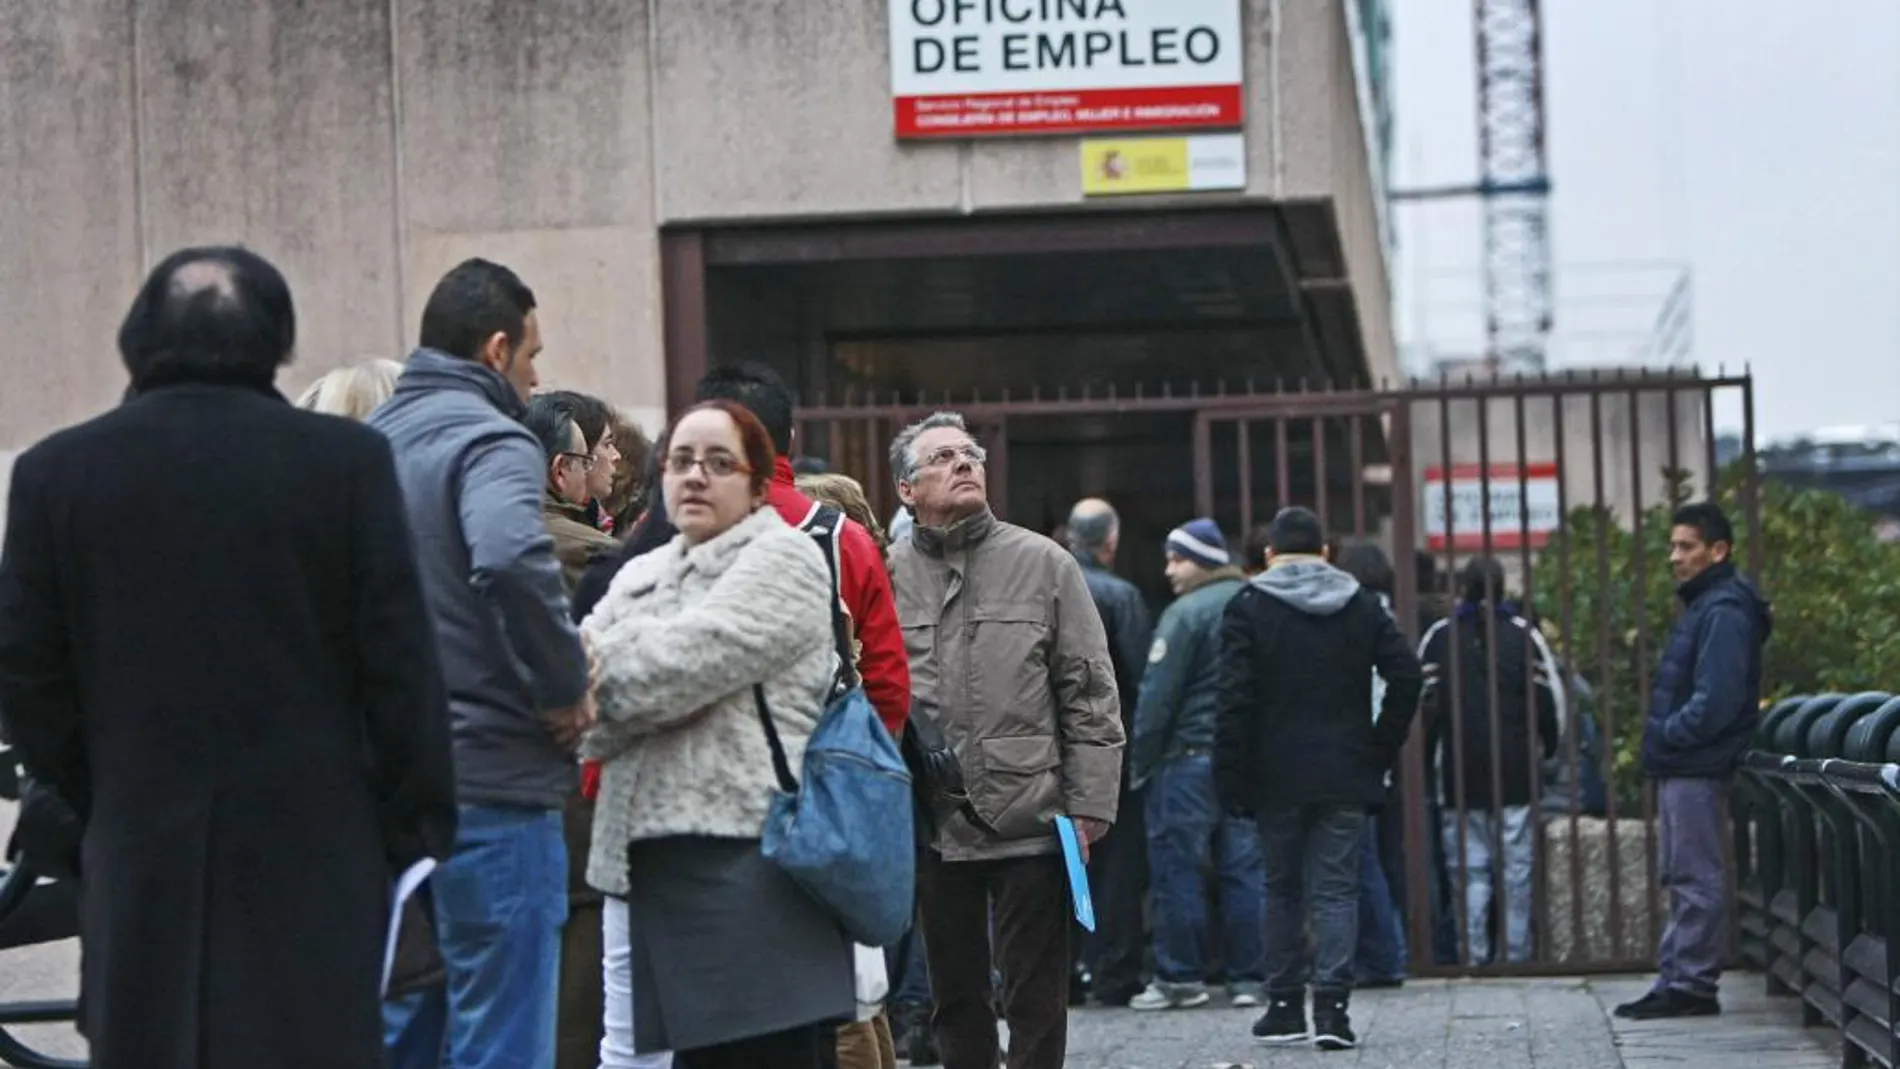 El gasto en prestaciones por desempleo baja un 17,7% en enero